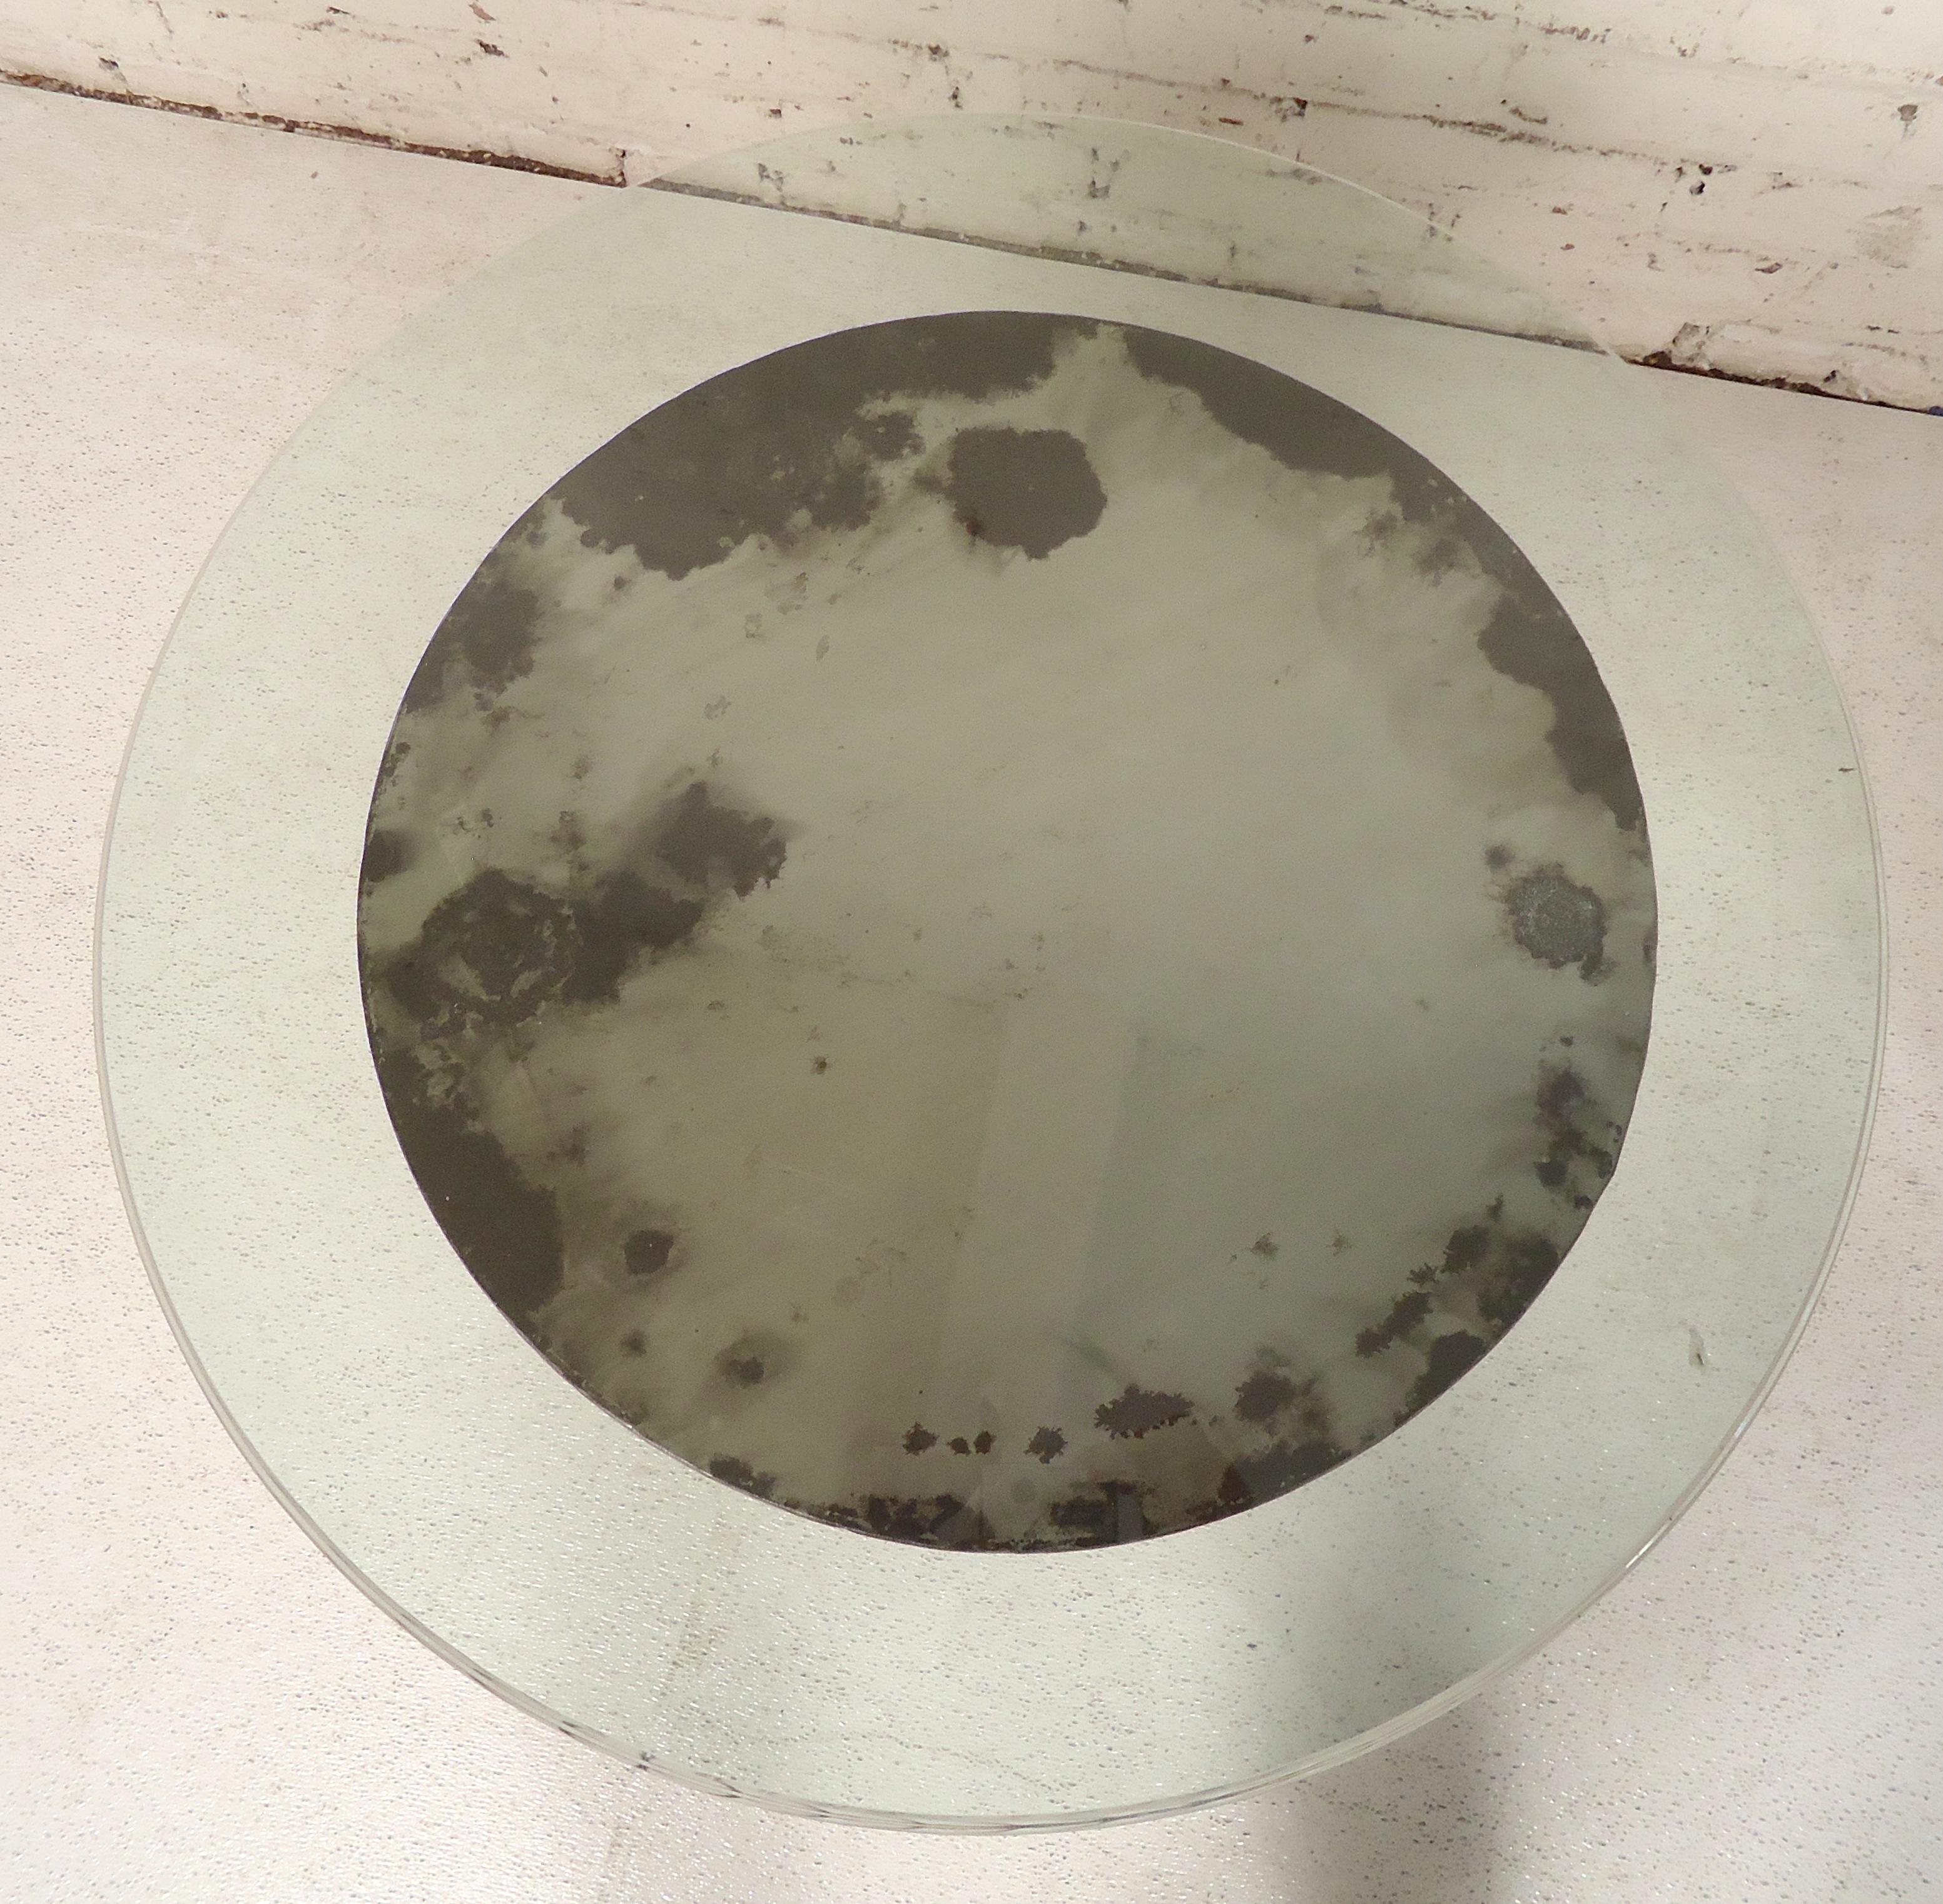 Runder Tisch mit Glasplatte und Spiralfuß aus Metall. Der Sockel wurde im Stil von blankem Metall neu gestaltet.

(Bitte bestätigen Sie den Artikelstandort NY oder NJ mit dem Händler).
 